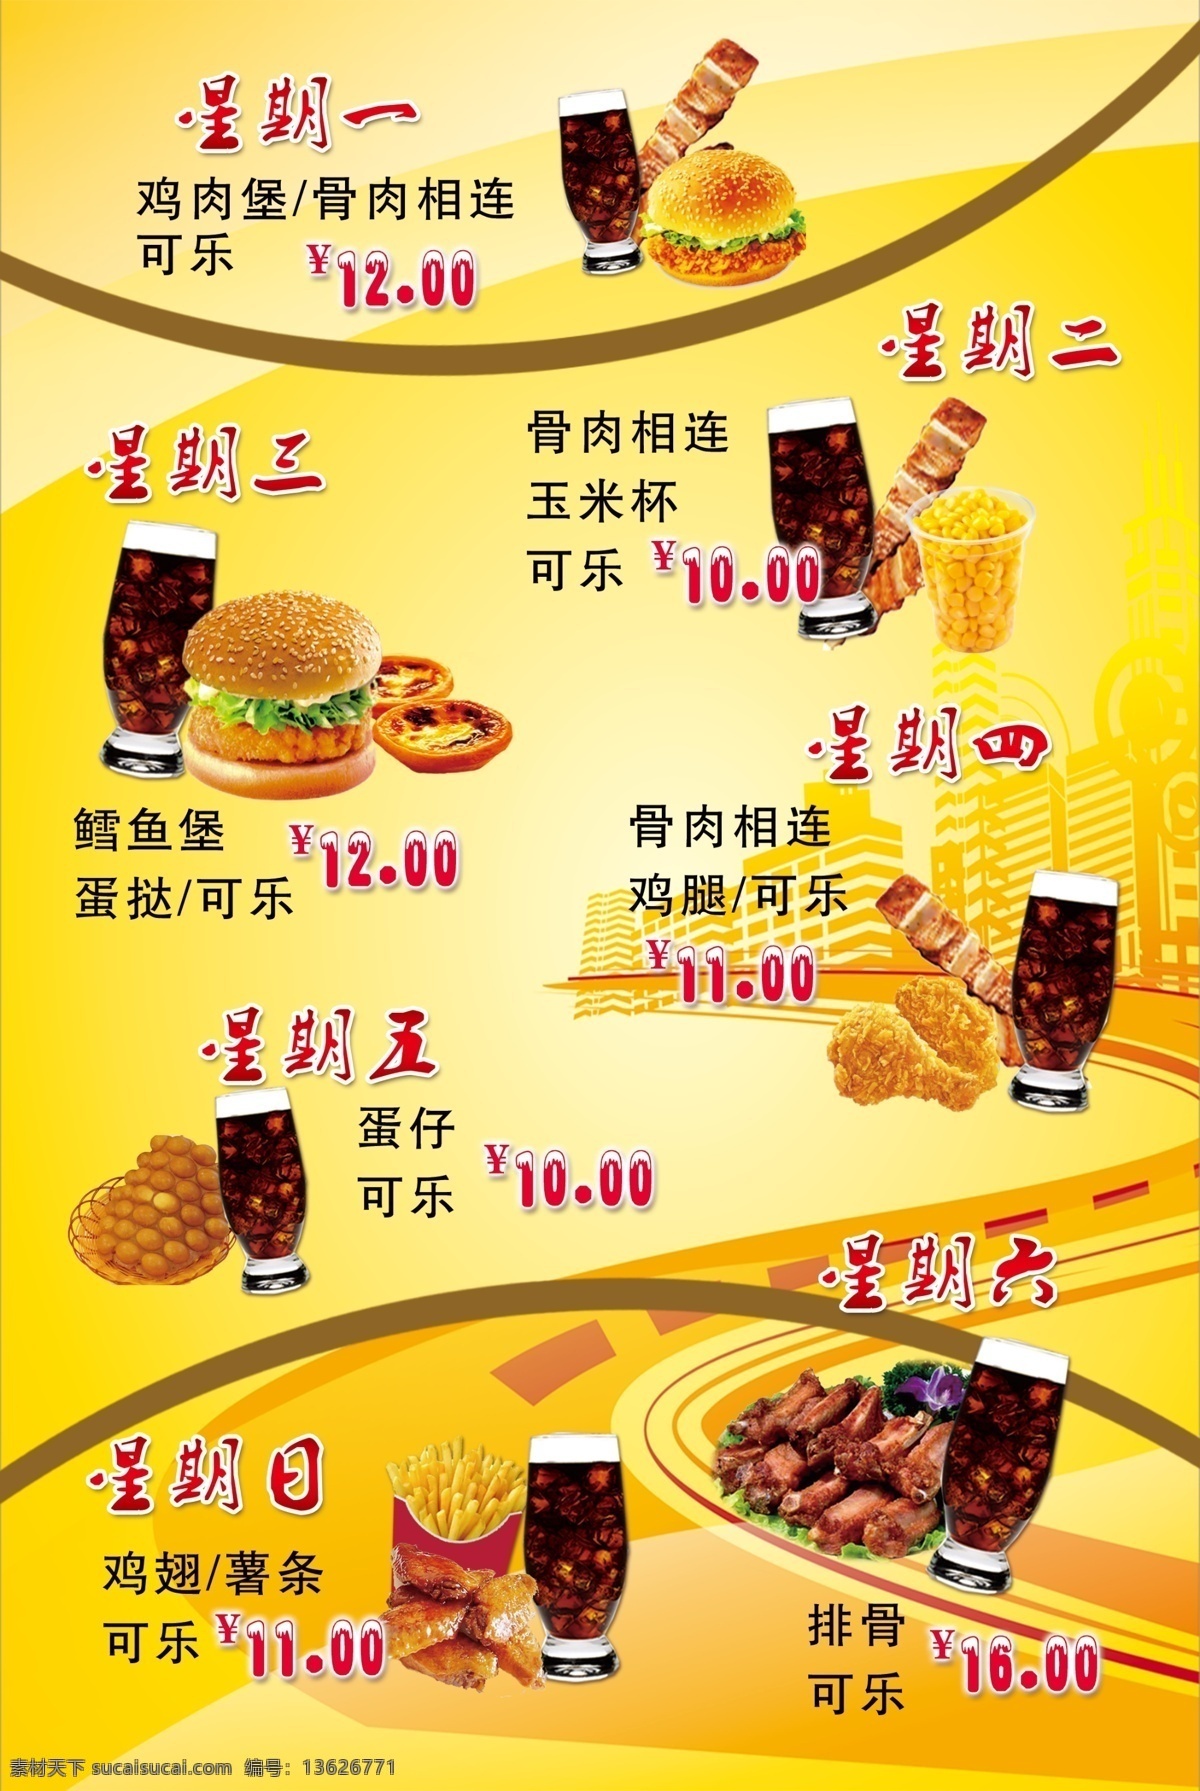 汉堡 套餐 价格表 可乐 蛋挞 果汁 薯条 菜单菜谱